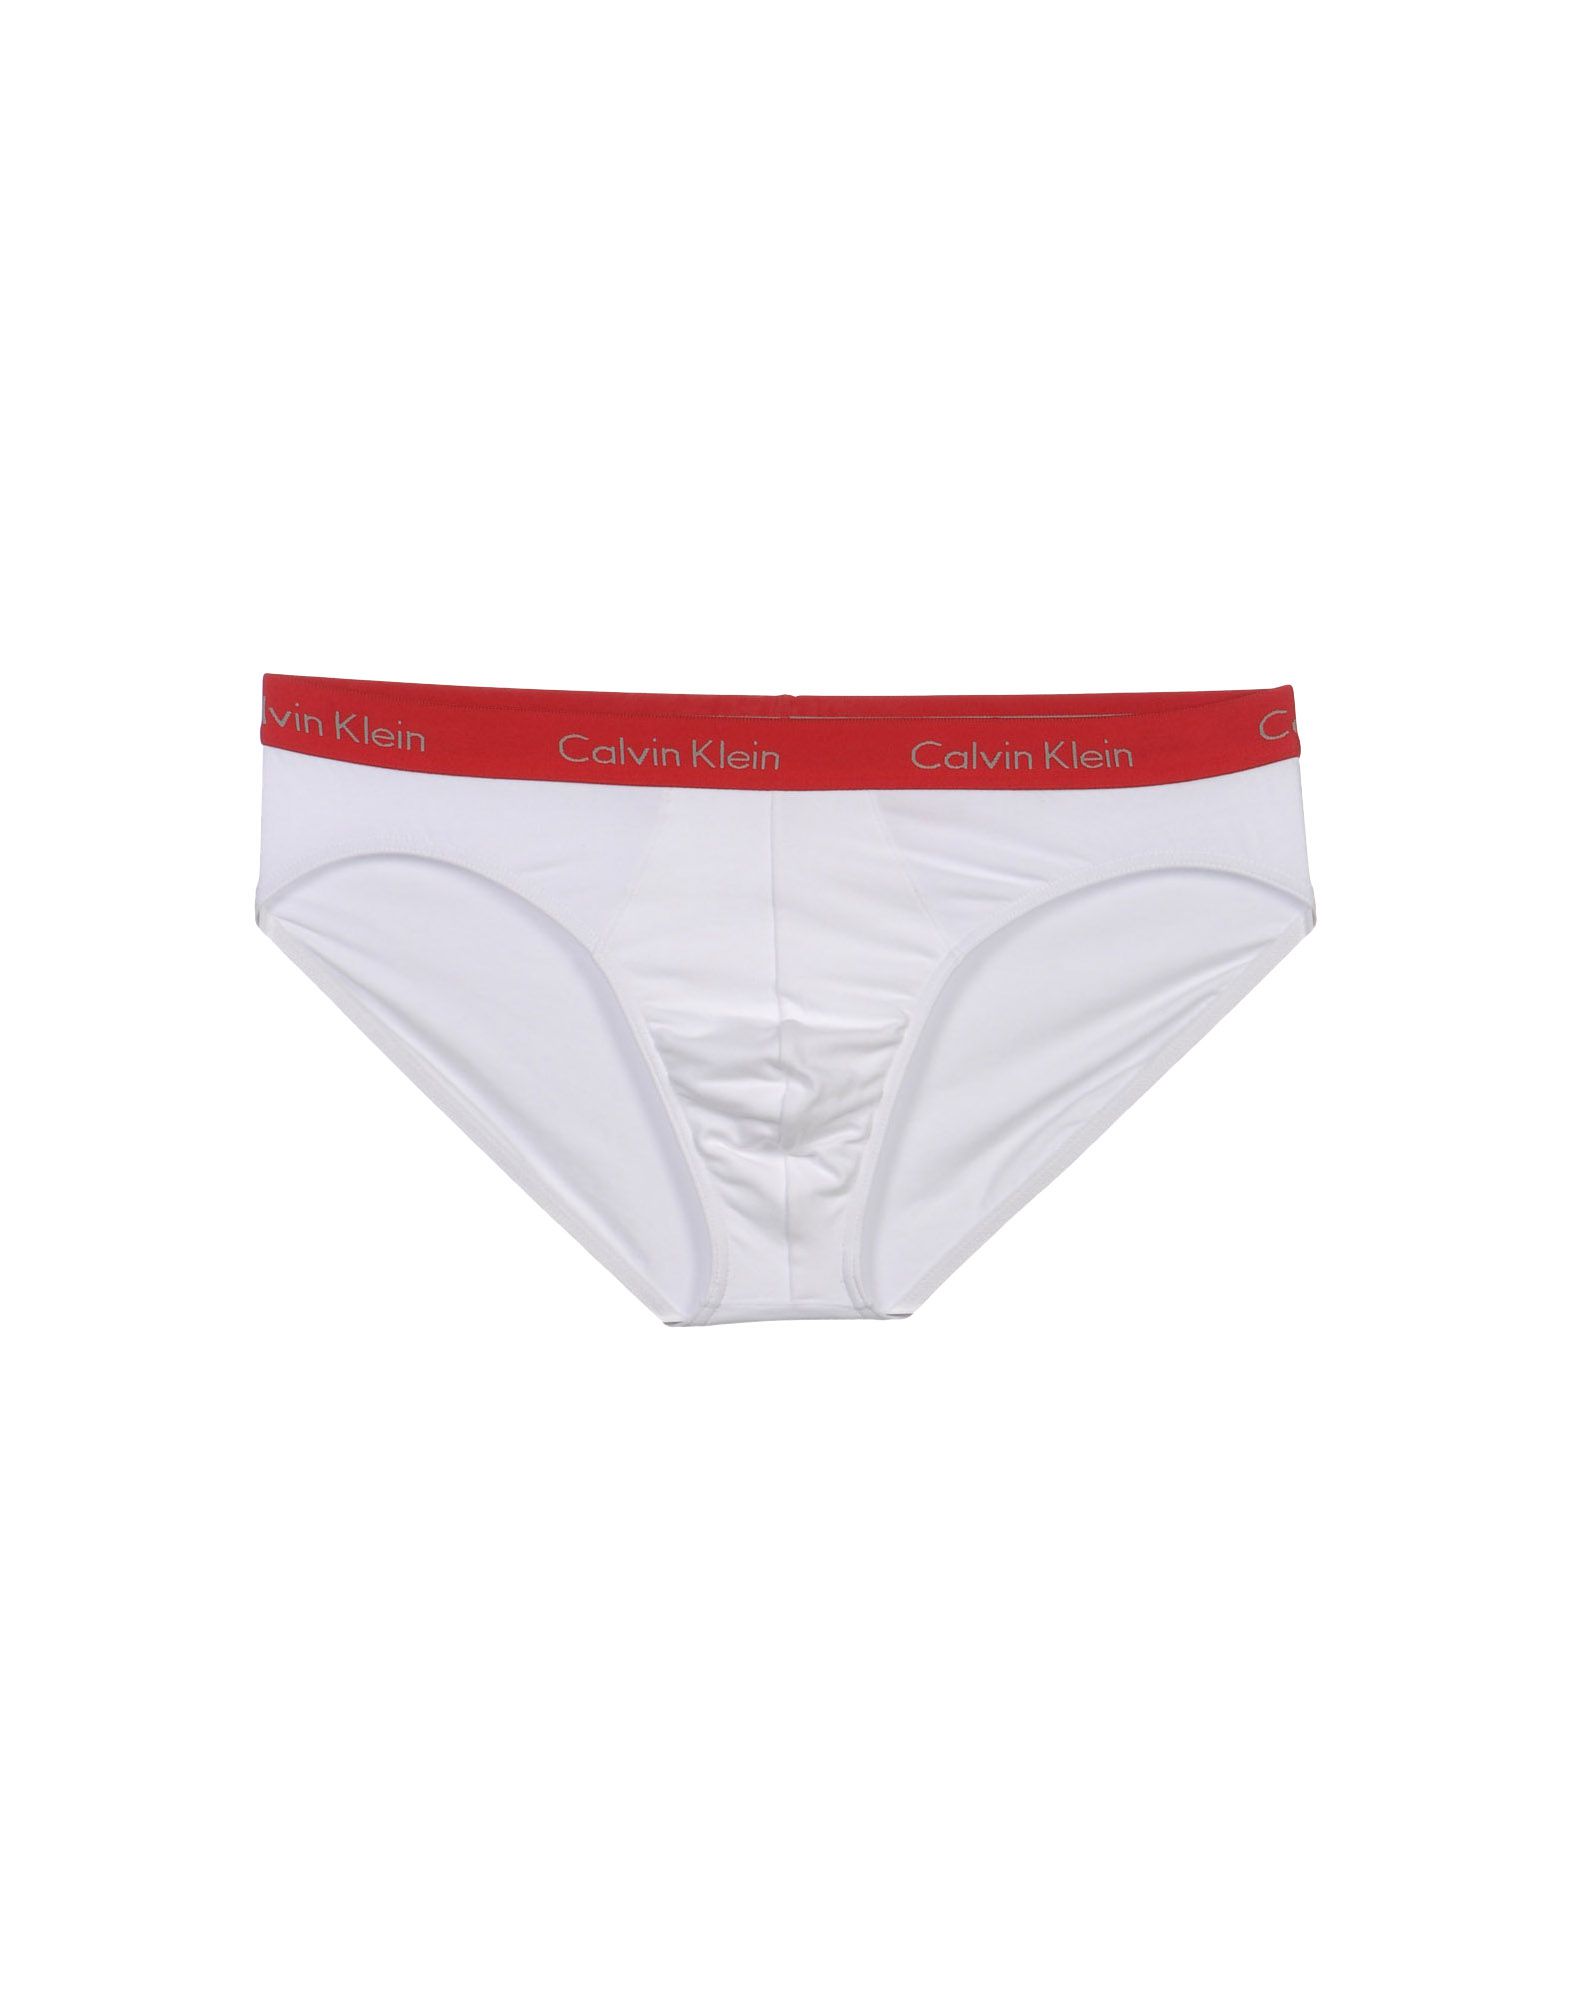 Foto Calvin Klein Underwear Slips Hombre Blanco